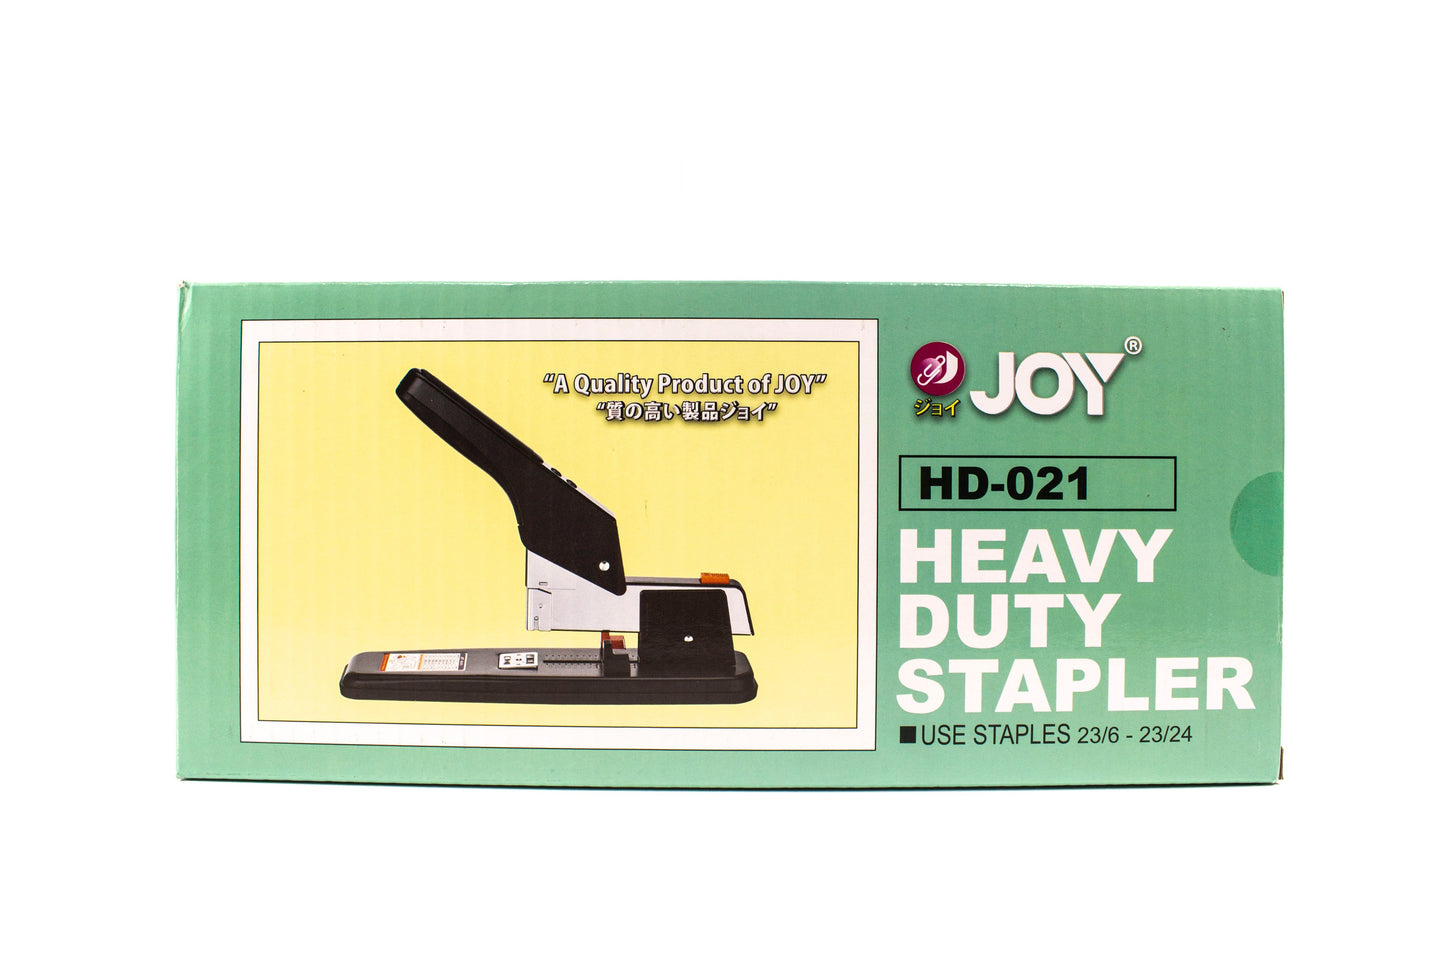 Joy Heavy Duty Stapler HD-021